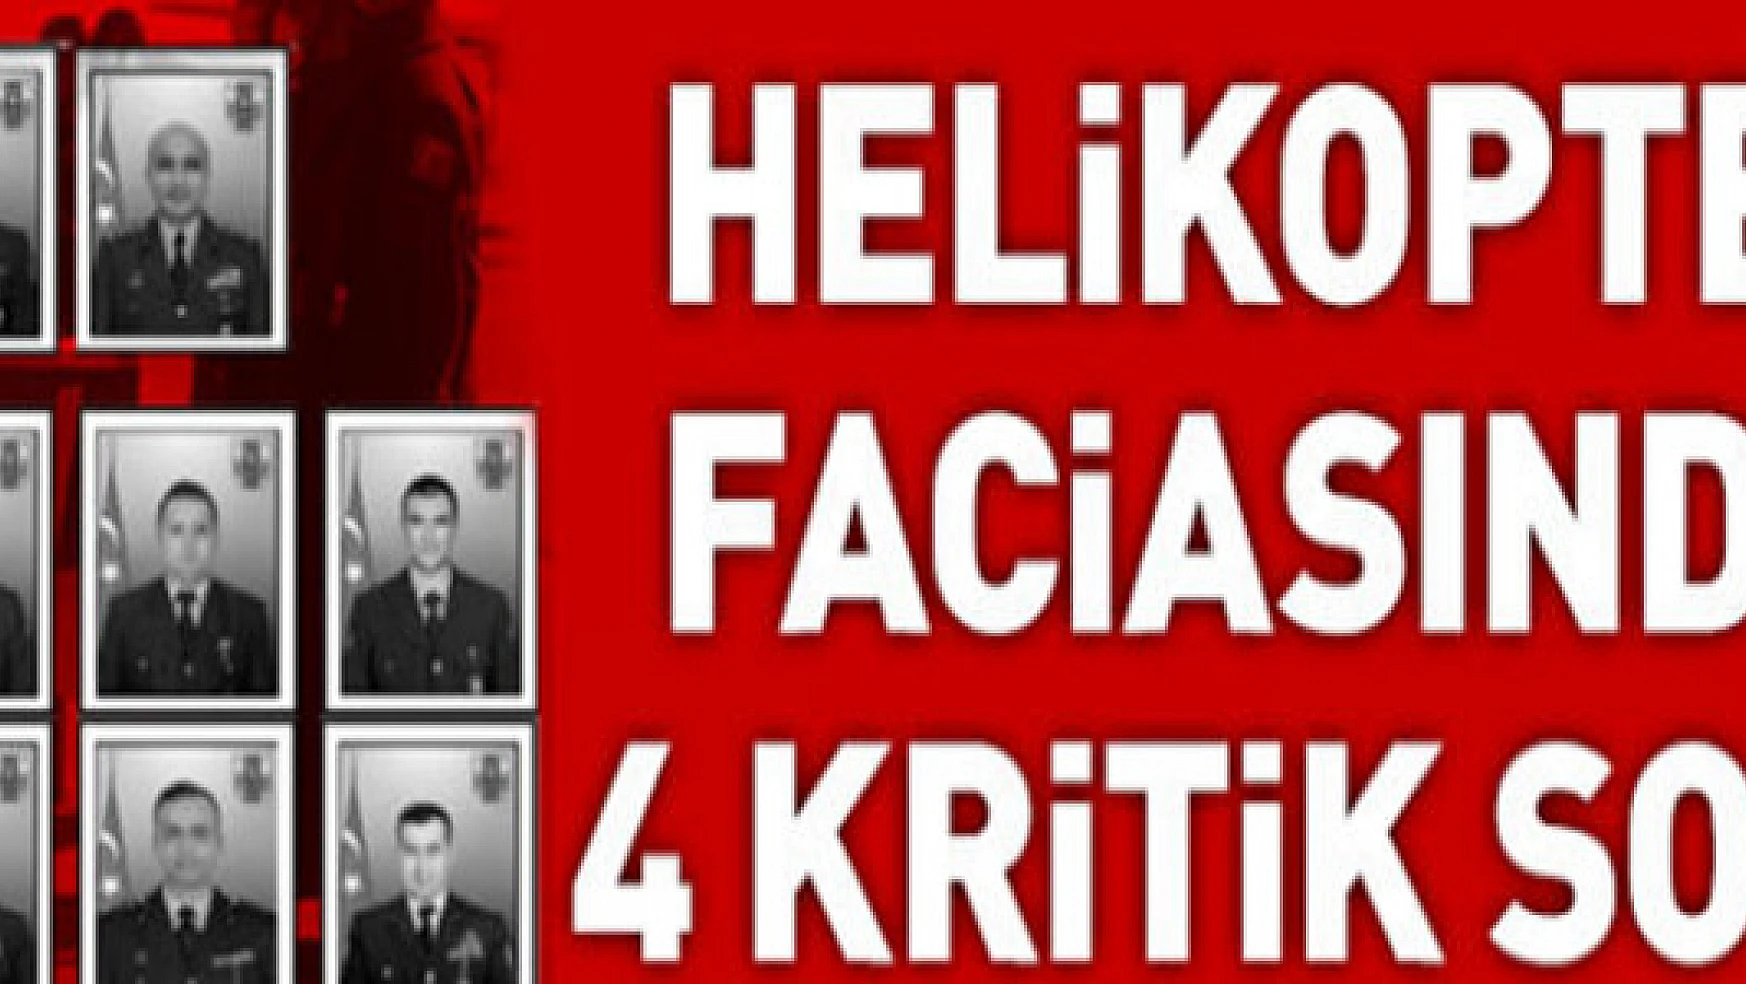 Bitlis'teki helikopter faciasında 4 kritik soru!